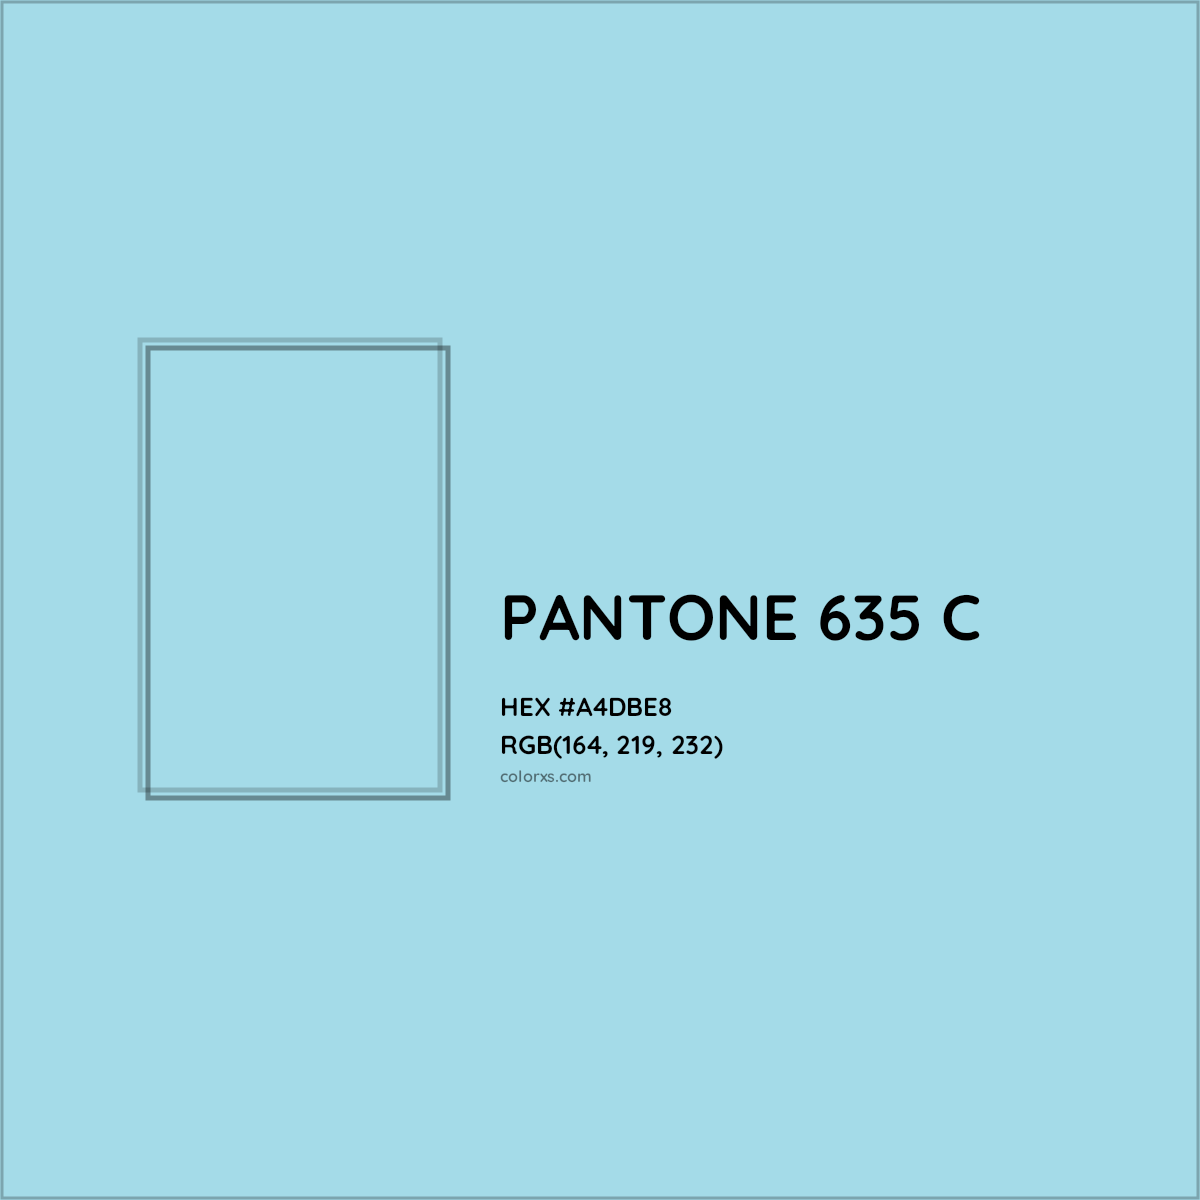 HEX #A4DBE8 PANTONE 635 C CMS Pantone PMS - Color Code